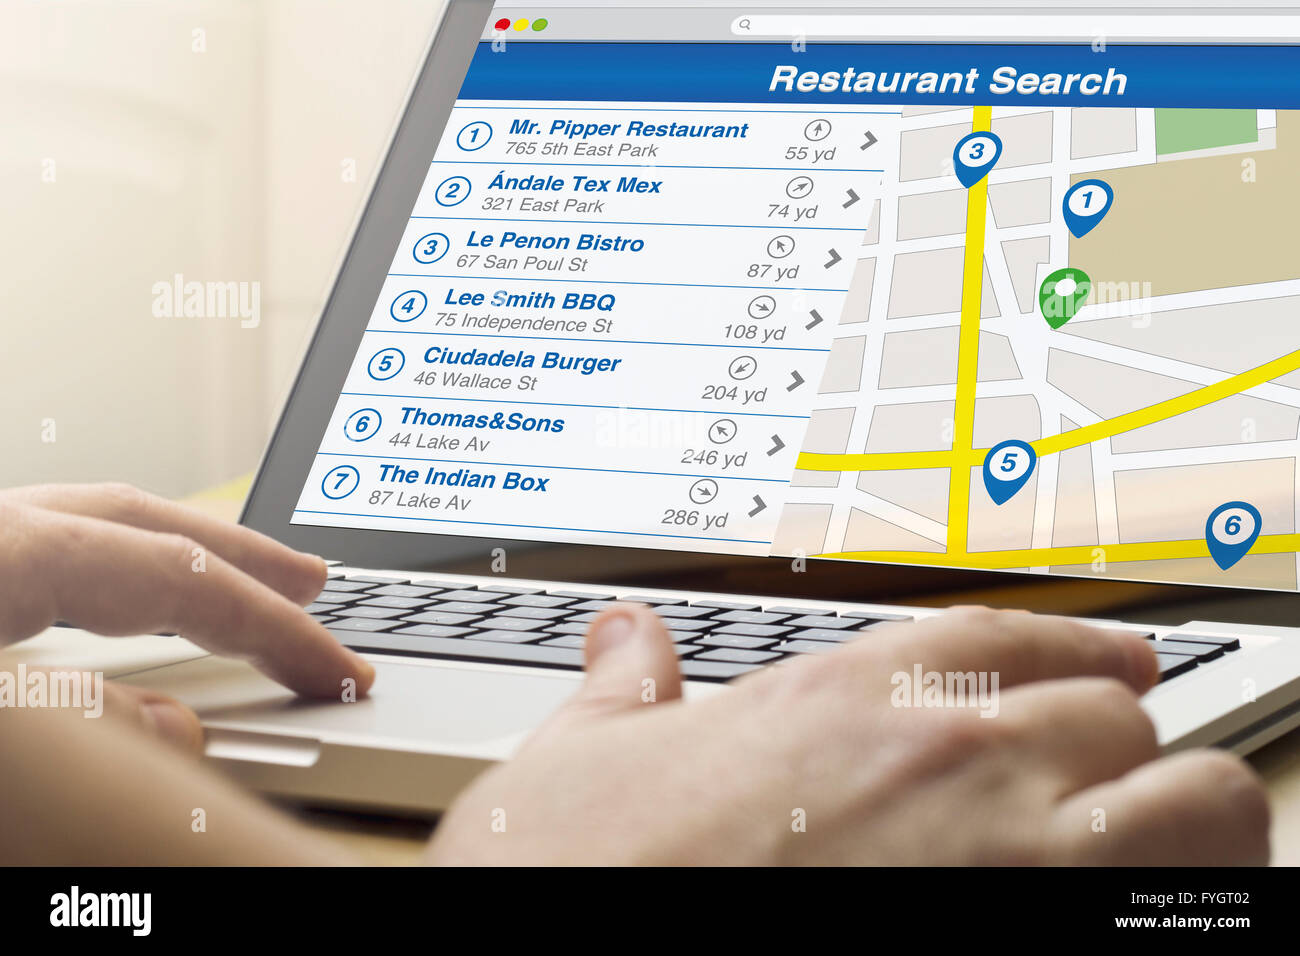 Restaurant recherche concept : l'homme à l'aide d'un ordinateur portable avec le logiciel de recherche de restaurant à l'écran. Tous les graphiques de l'écran sont constitués. Banque D'Images